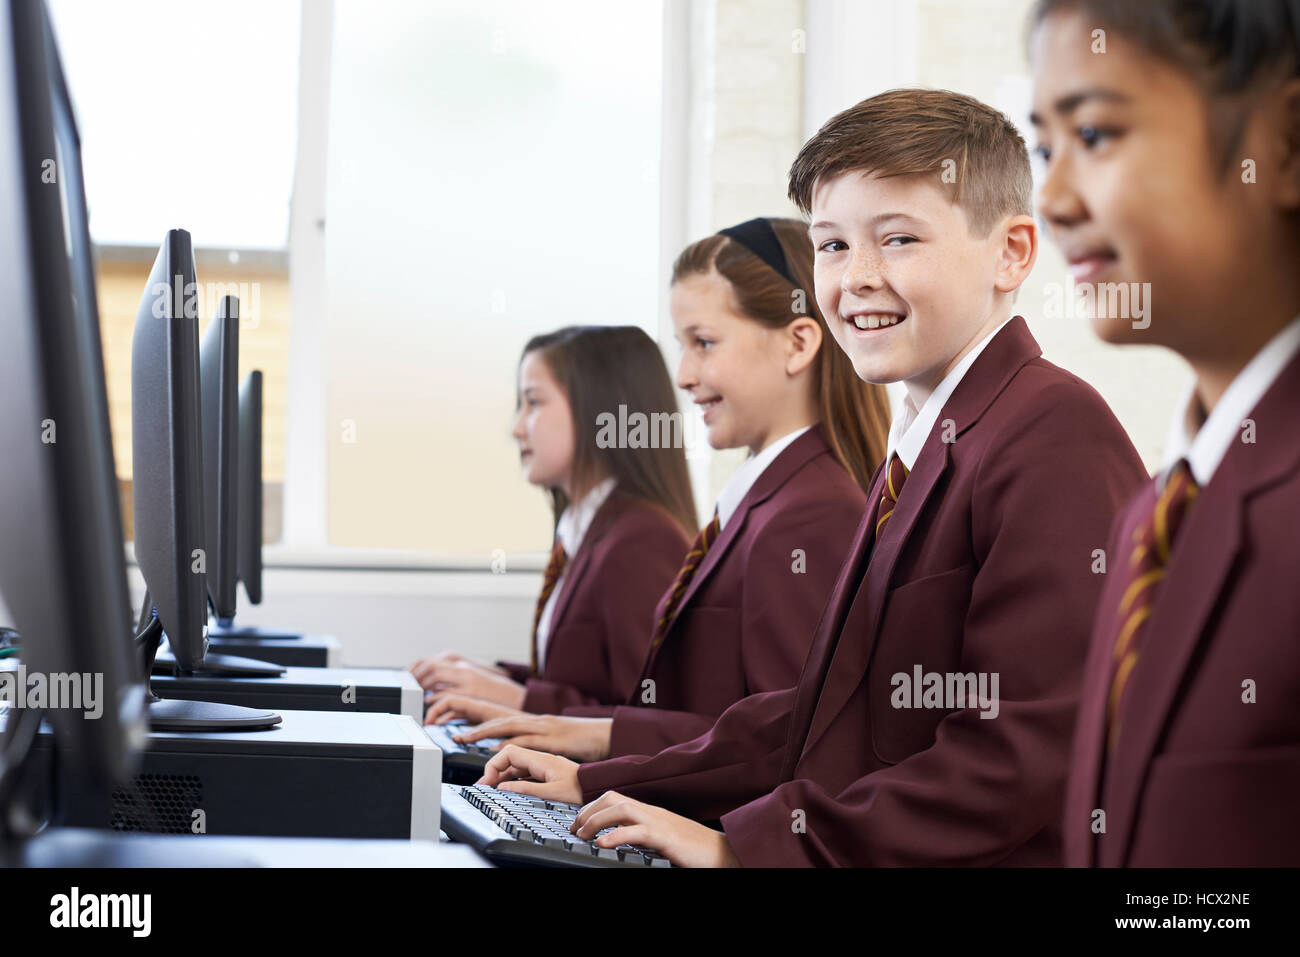 Los alumnos vistiendo uniforme escolar en clase de computación Foto de stock